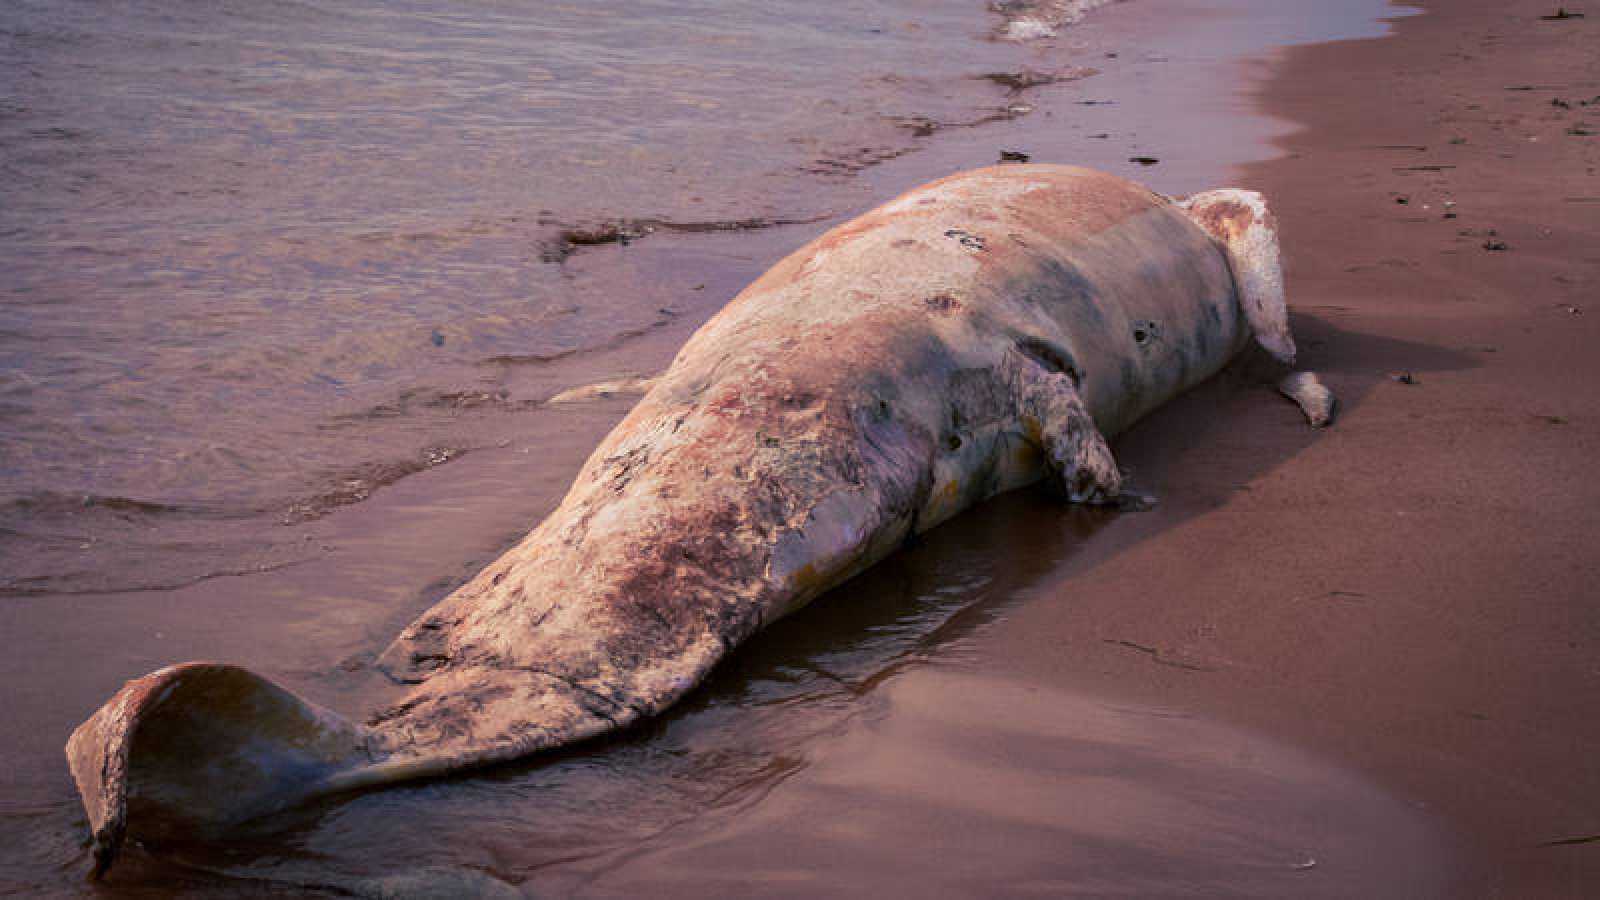 Encuentran ballena muerta en Italia con 20 kilos de plástico